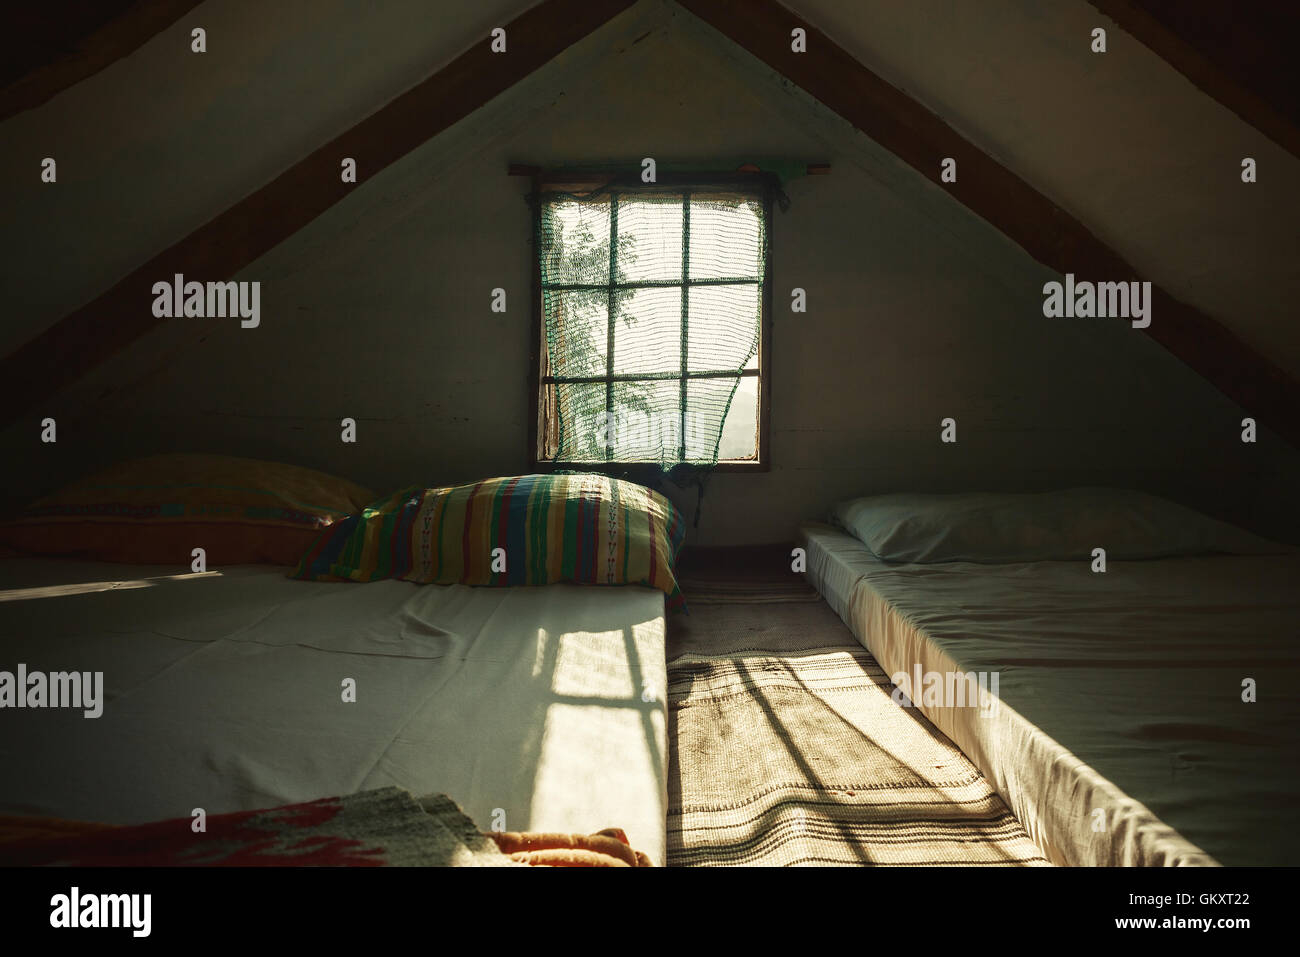 Innenansicht einer alten hölzernen Dachboden Sonnentag, verträumter ambient. Bunte Kissen hinter dem Fenster. Stockfoto